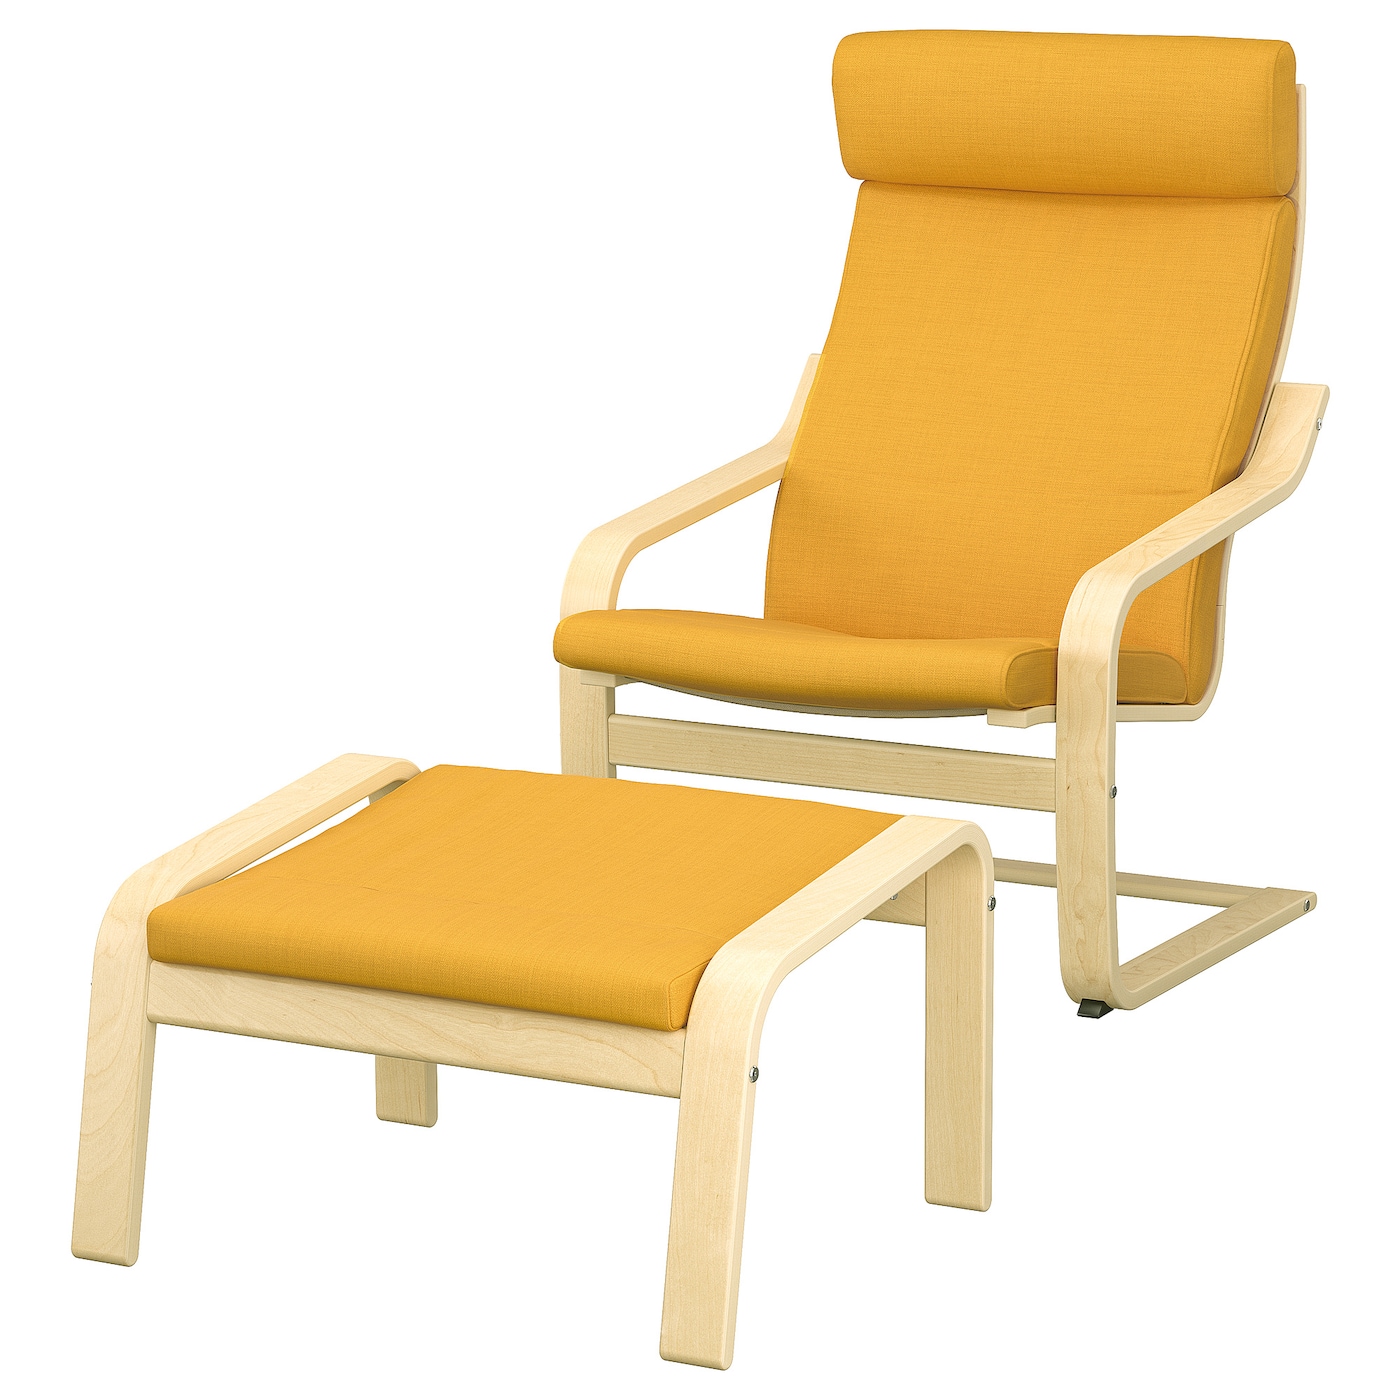 ПОЭНГ Кресло и подставка для ног, березовый шпон/Скифтебо желтый POÄNG IKEA подставка для ног 7046054 7046055 7046056 желтый